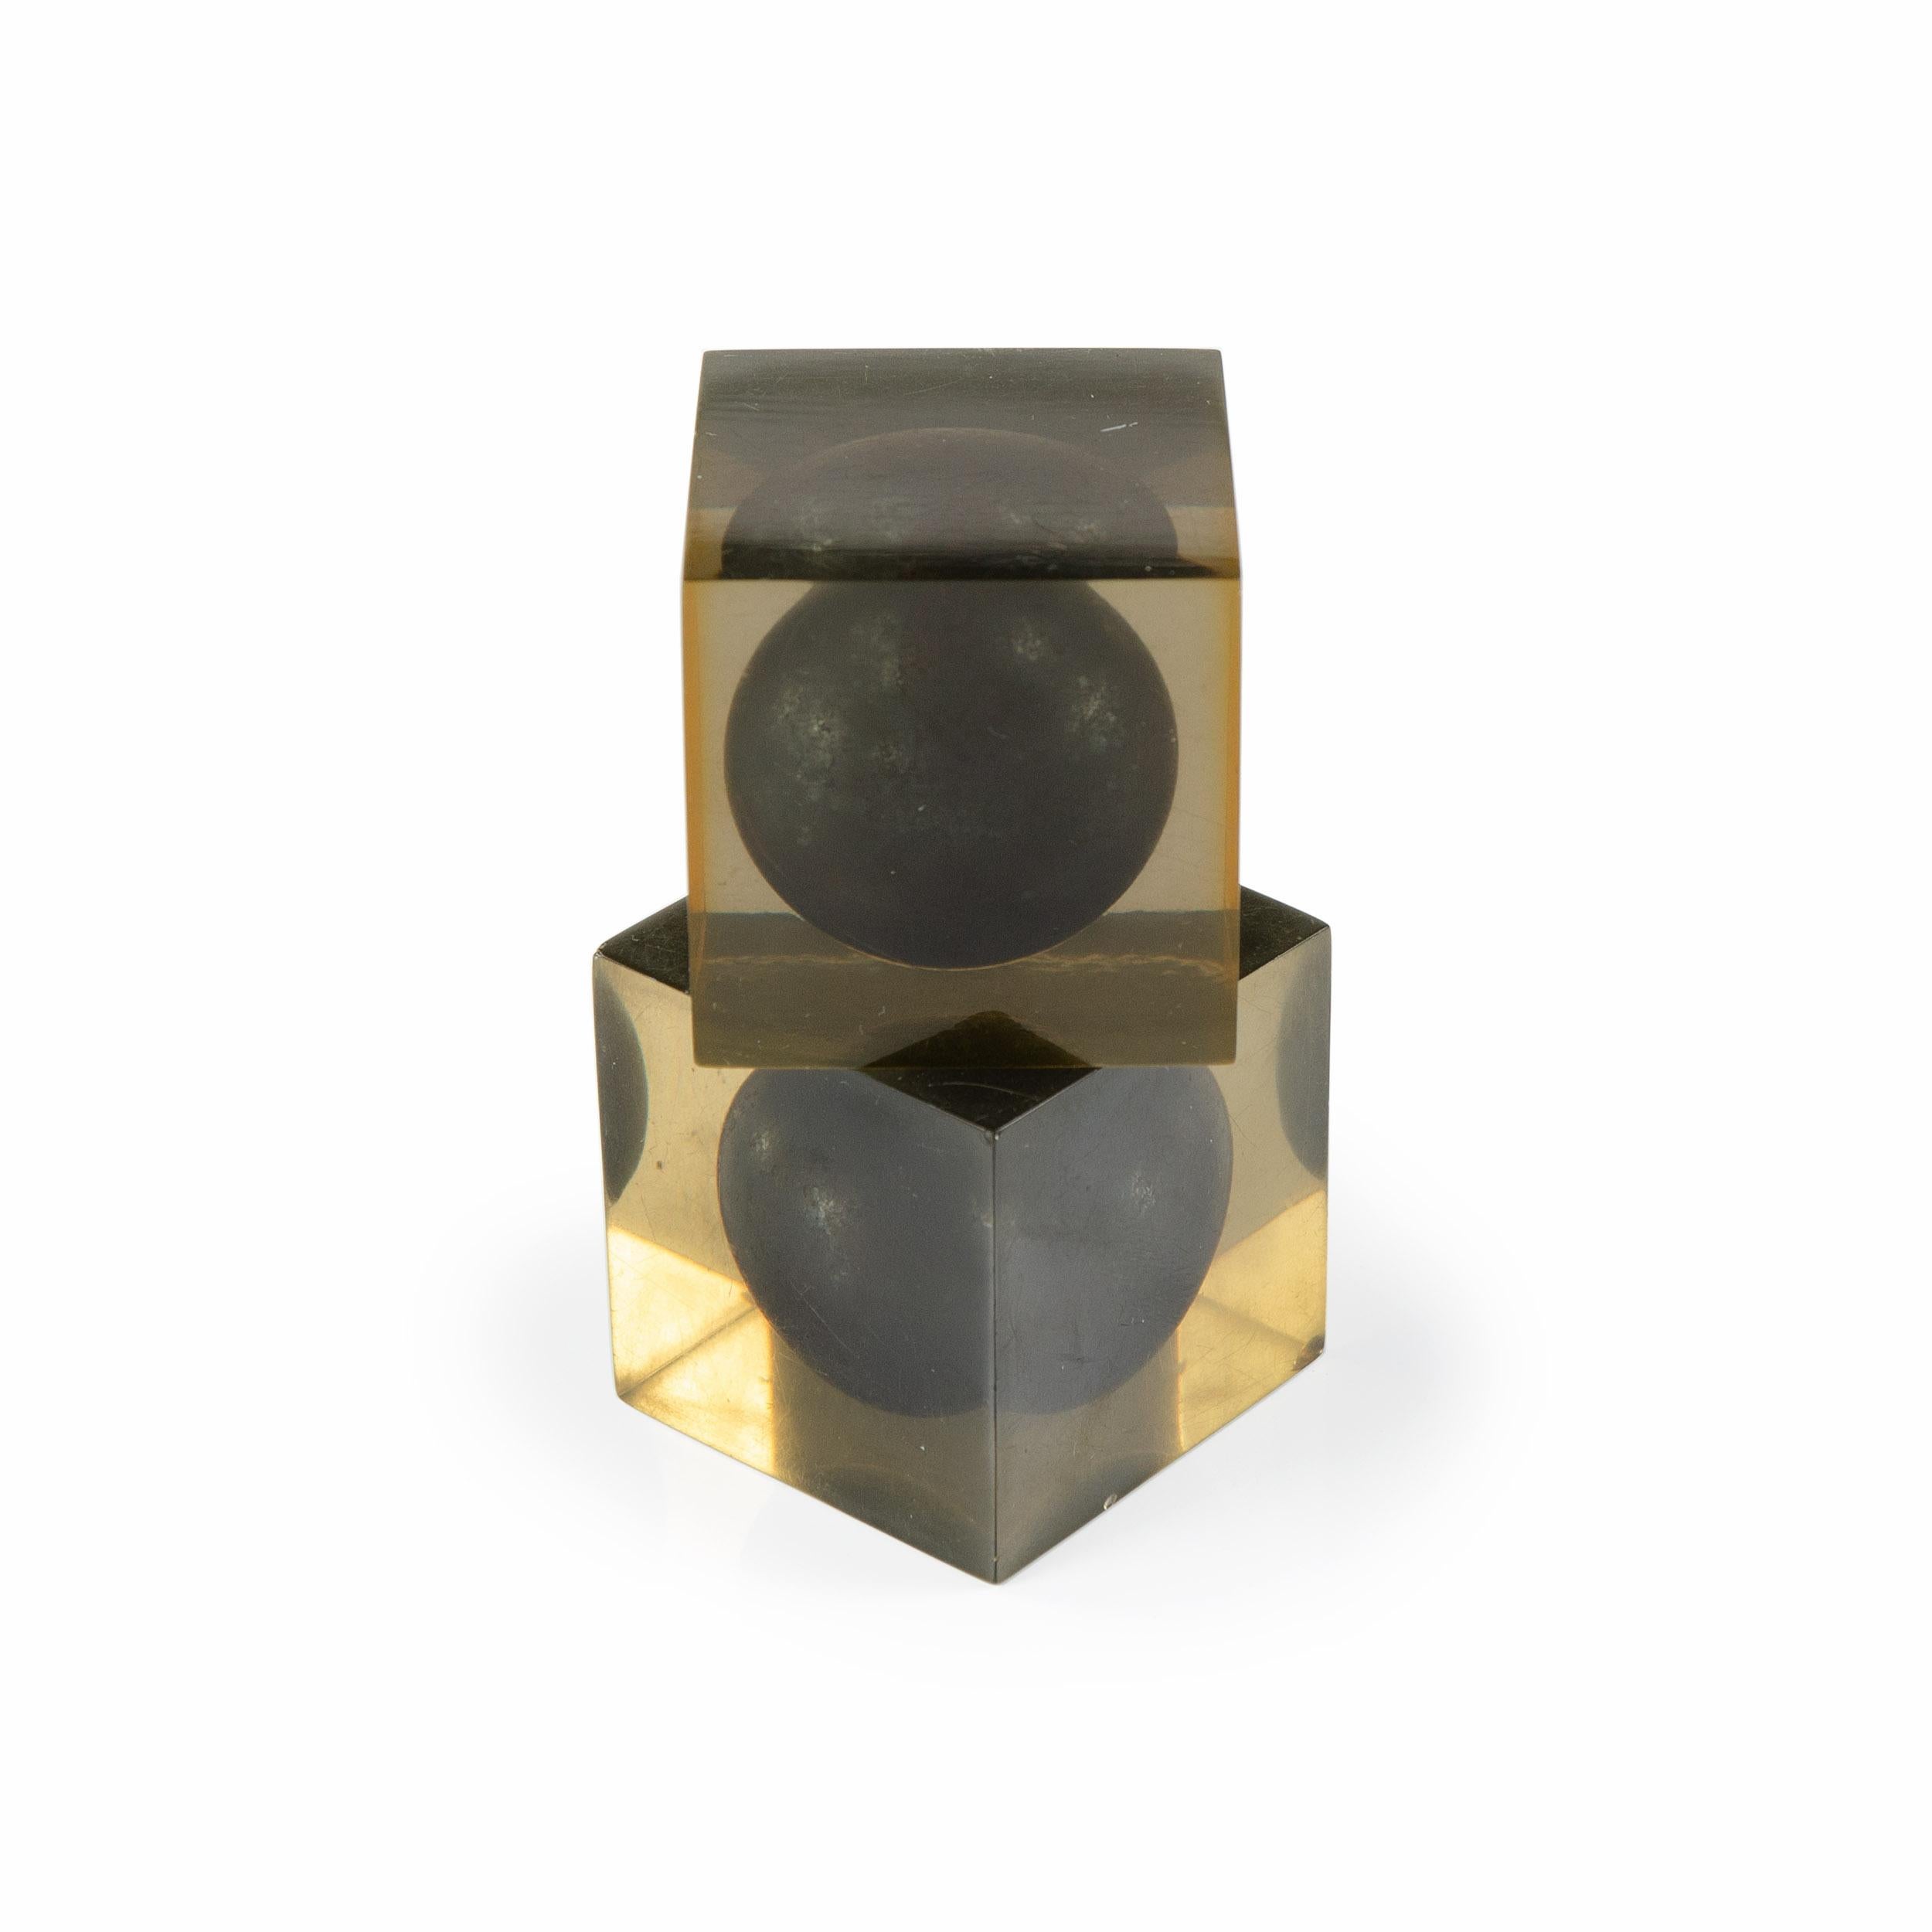 Deux cubes en résine contenant chacun une sphère, conçus par Enzo Mari. Fabriqué en Italie par Danese Milano, années 1950.